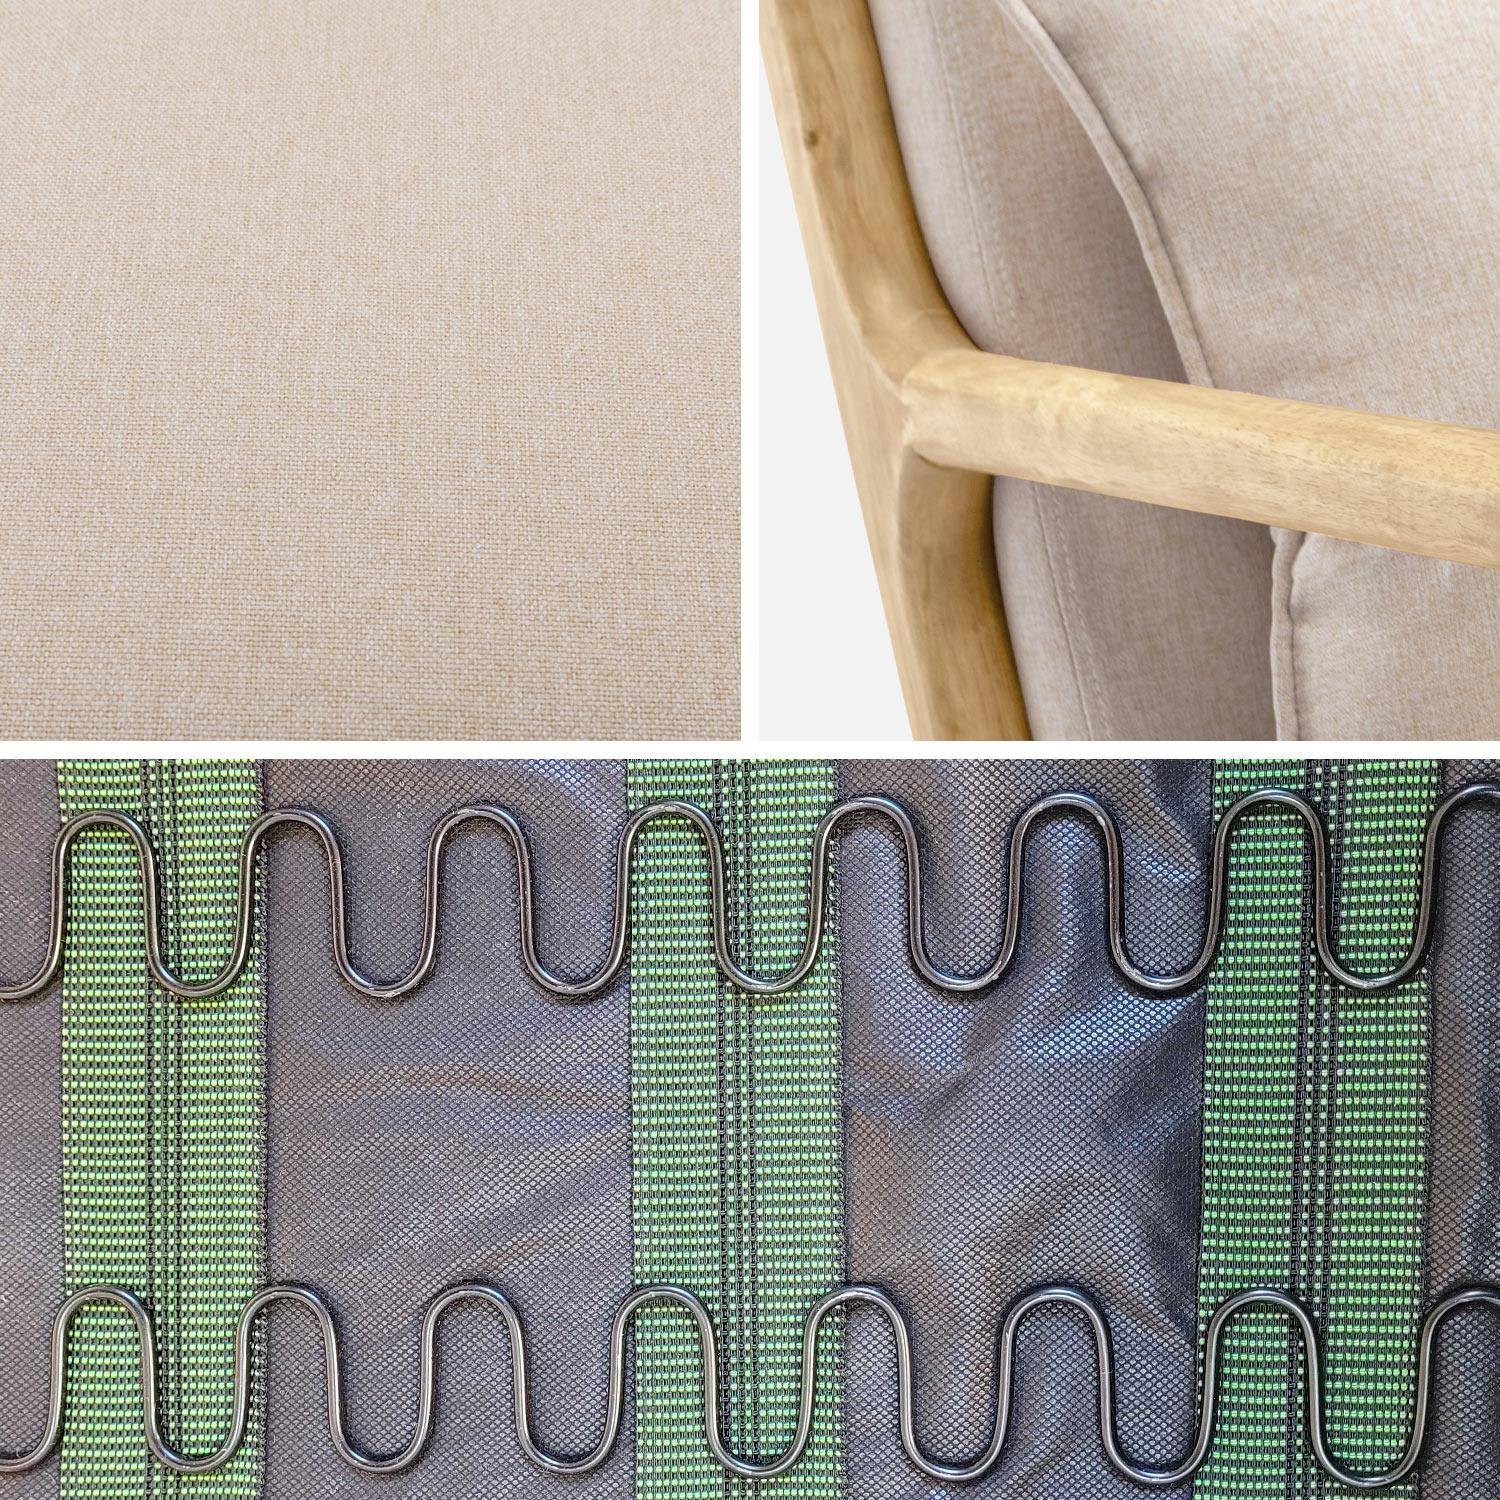 Sedia a dondolo di design in legno e tessuto, 1 posto, sedia a dondolo scandinava, beige Photo6